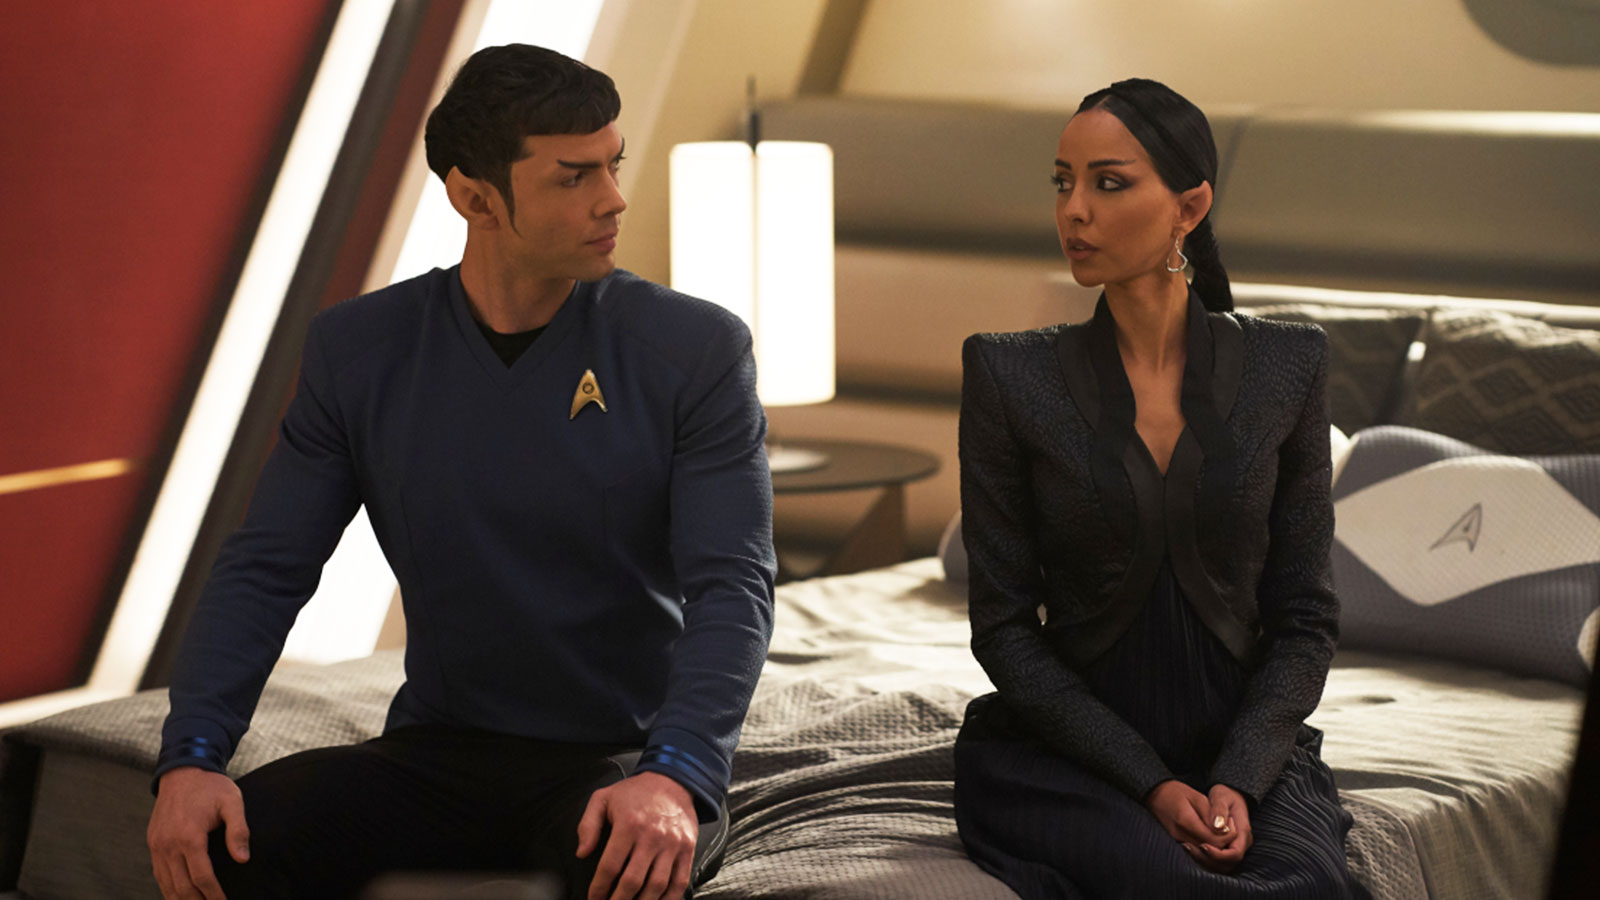 Star Trek: Strange New Worlds Season 1 Episode 5 “Spock Amok” Review: Time for hijinks